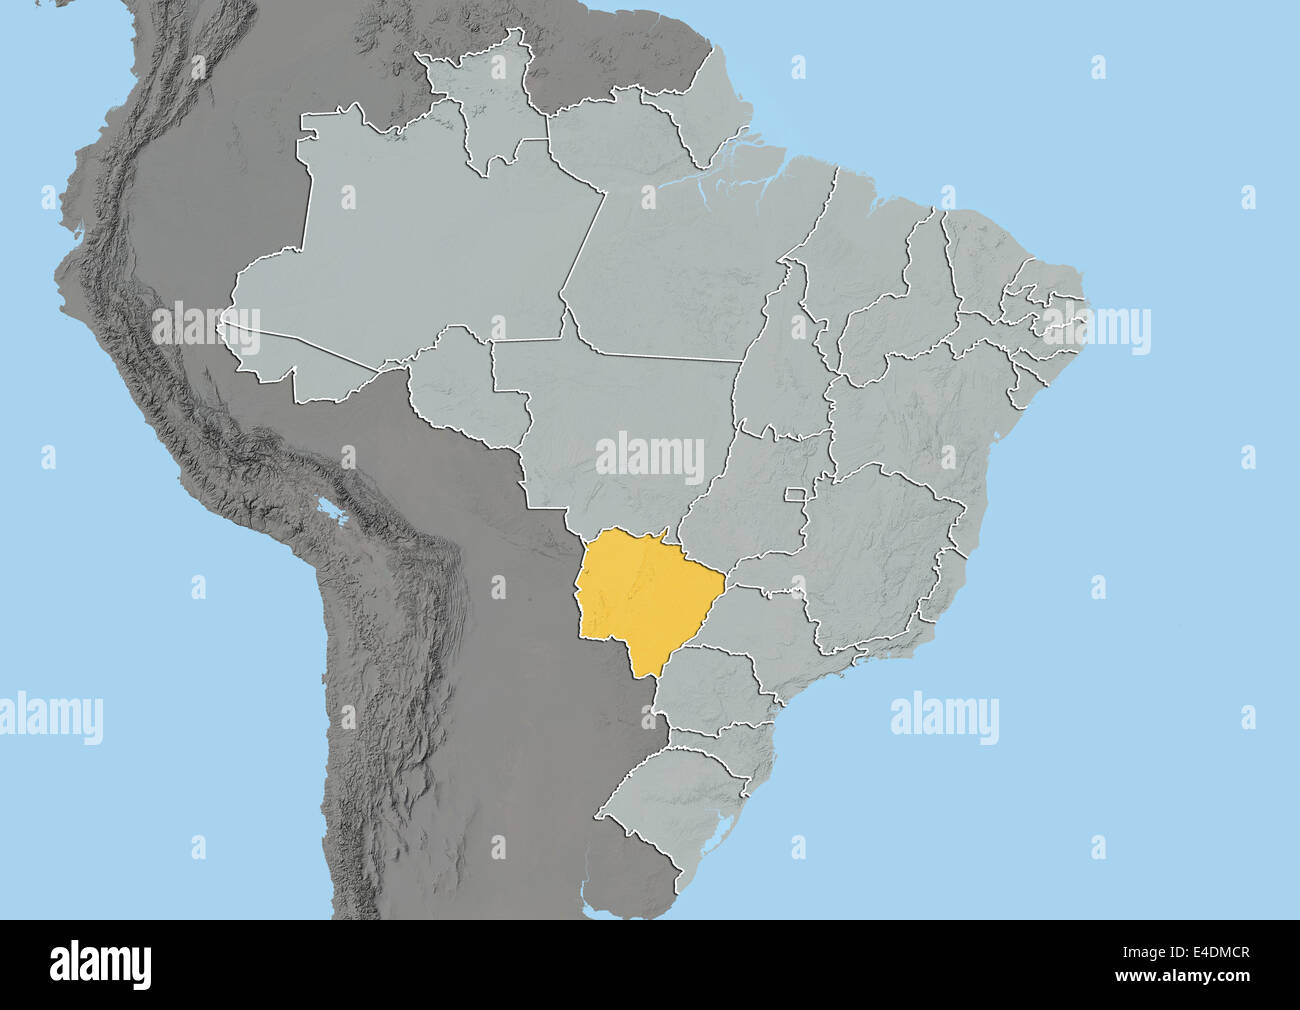 State Of Mato Grosso Do Sul Brazil Relief Map E4DMCR 